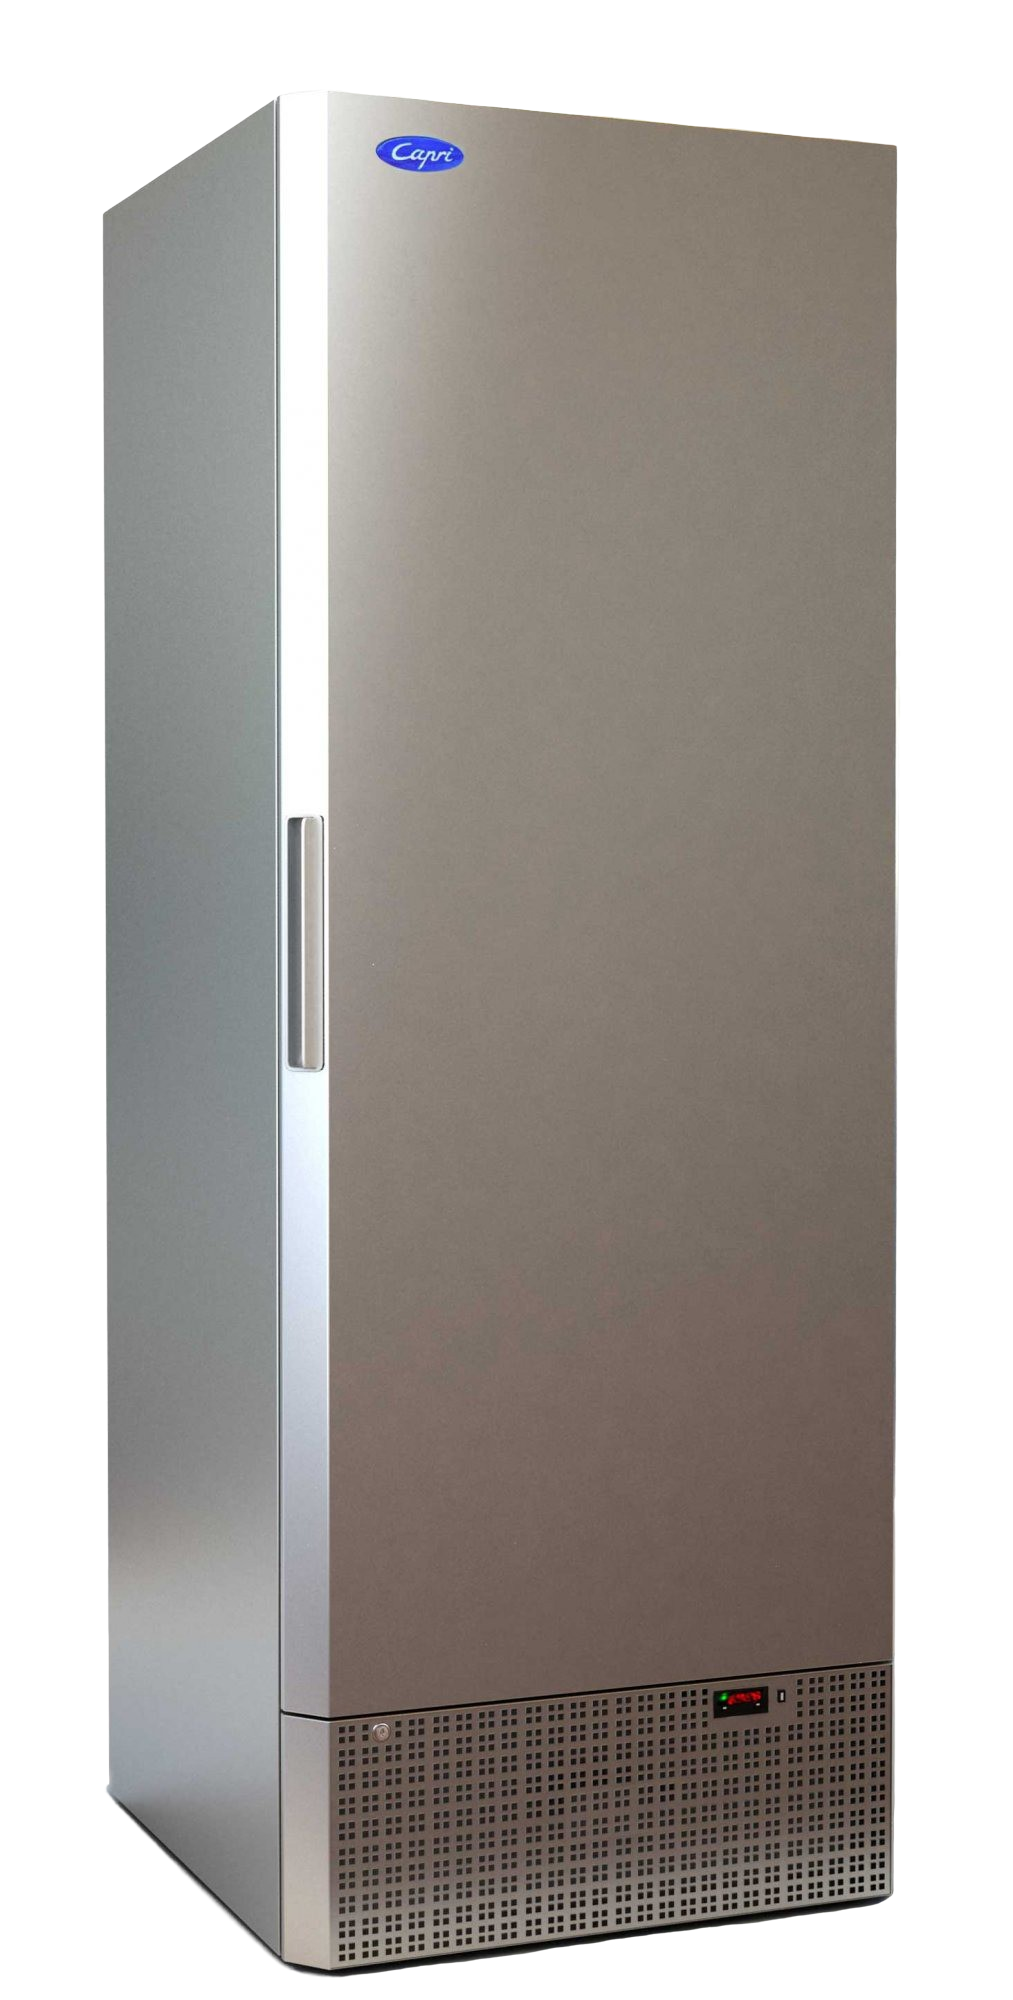 Холодильный шкаф МХМ Капри 0,7М (нержавейка)